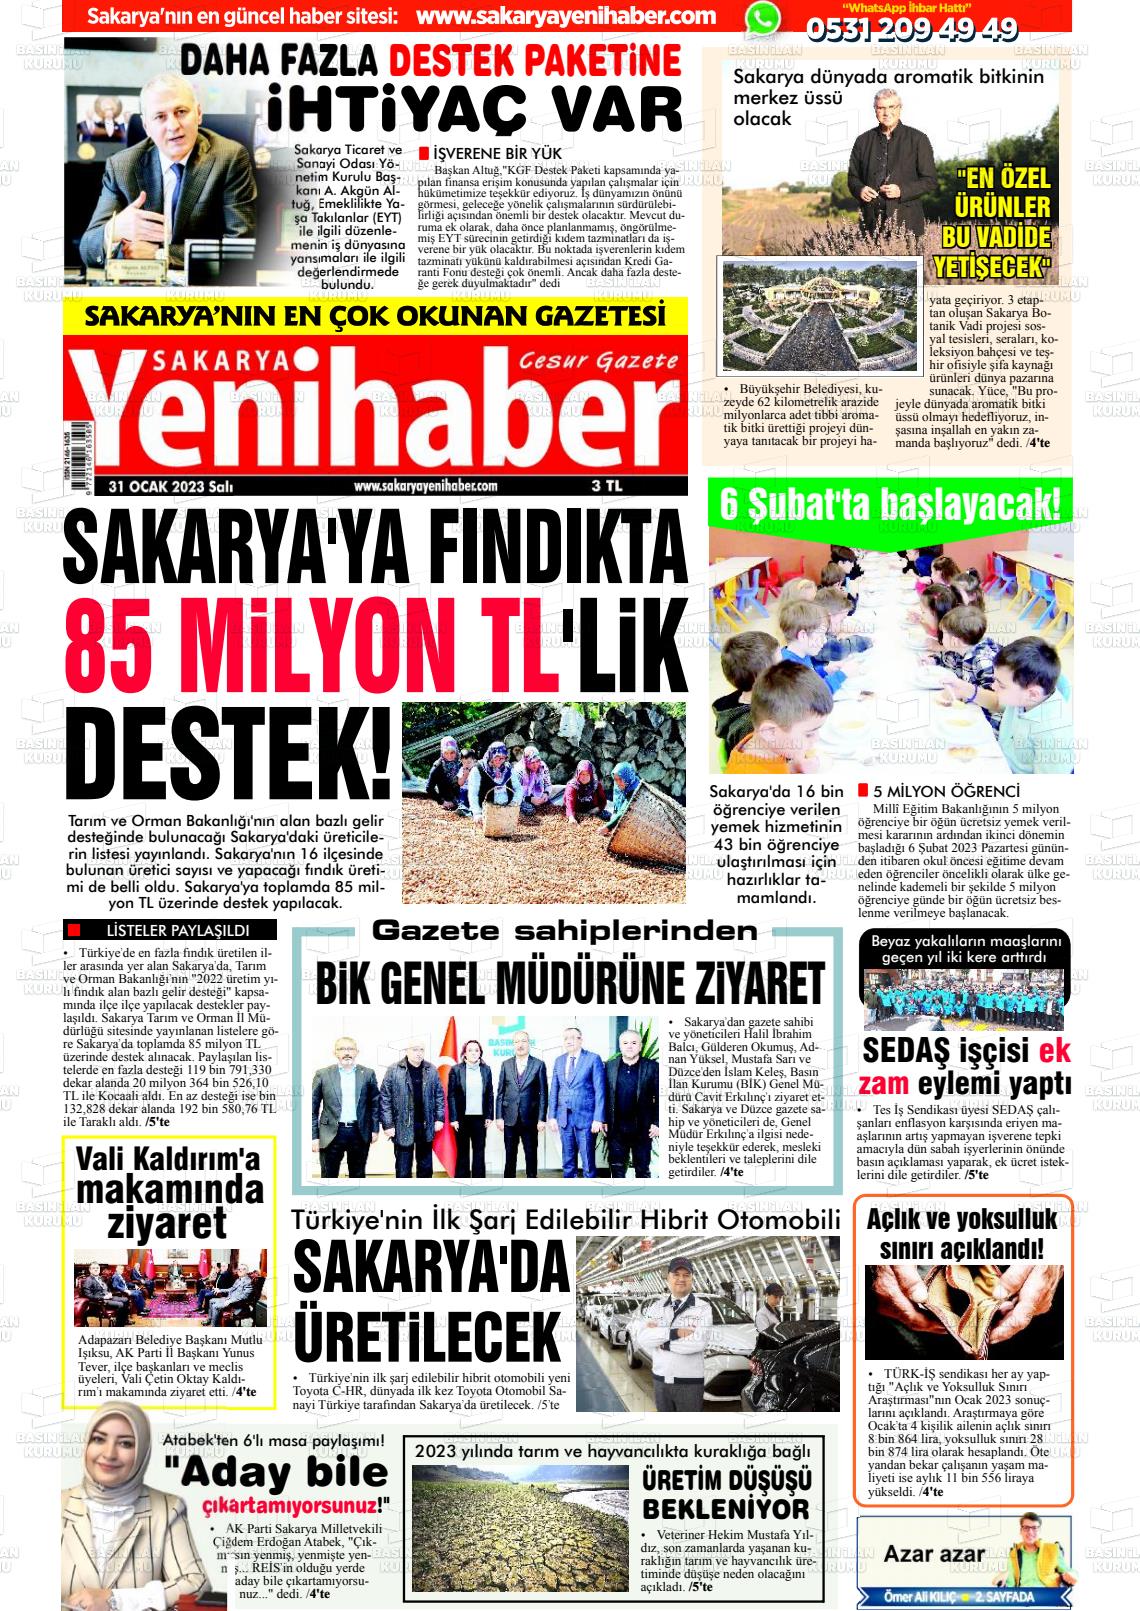 31 Ocak 2023 Sakarya Yeni Haber Gazete Manşeti